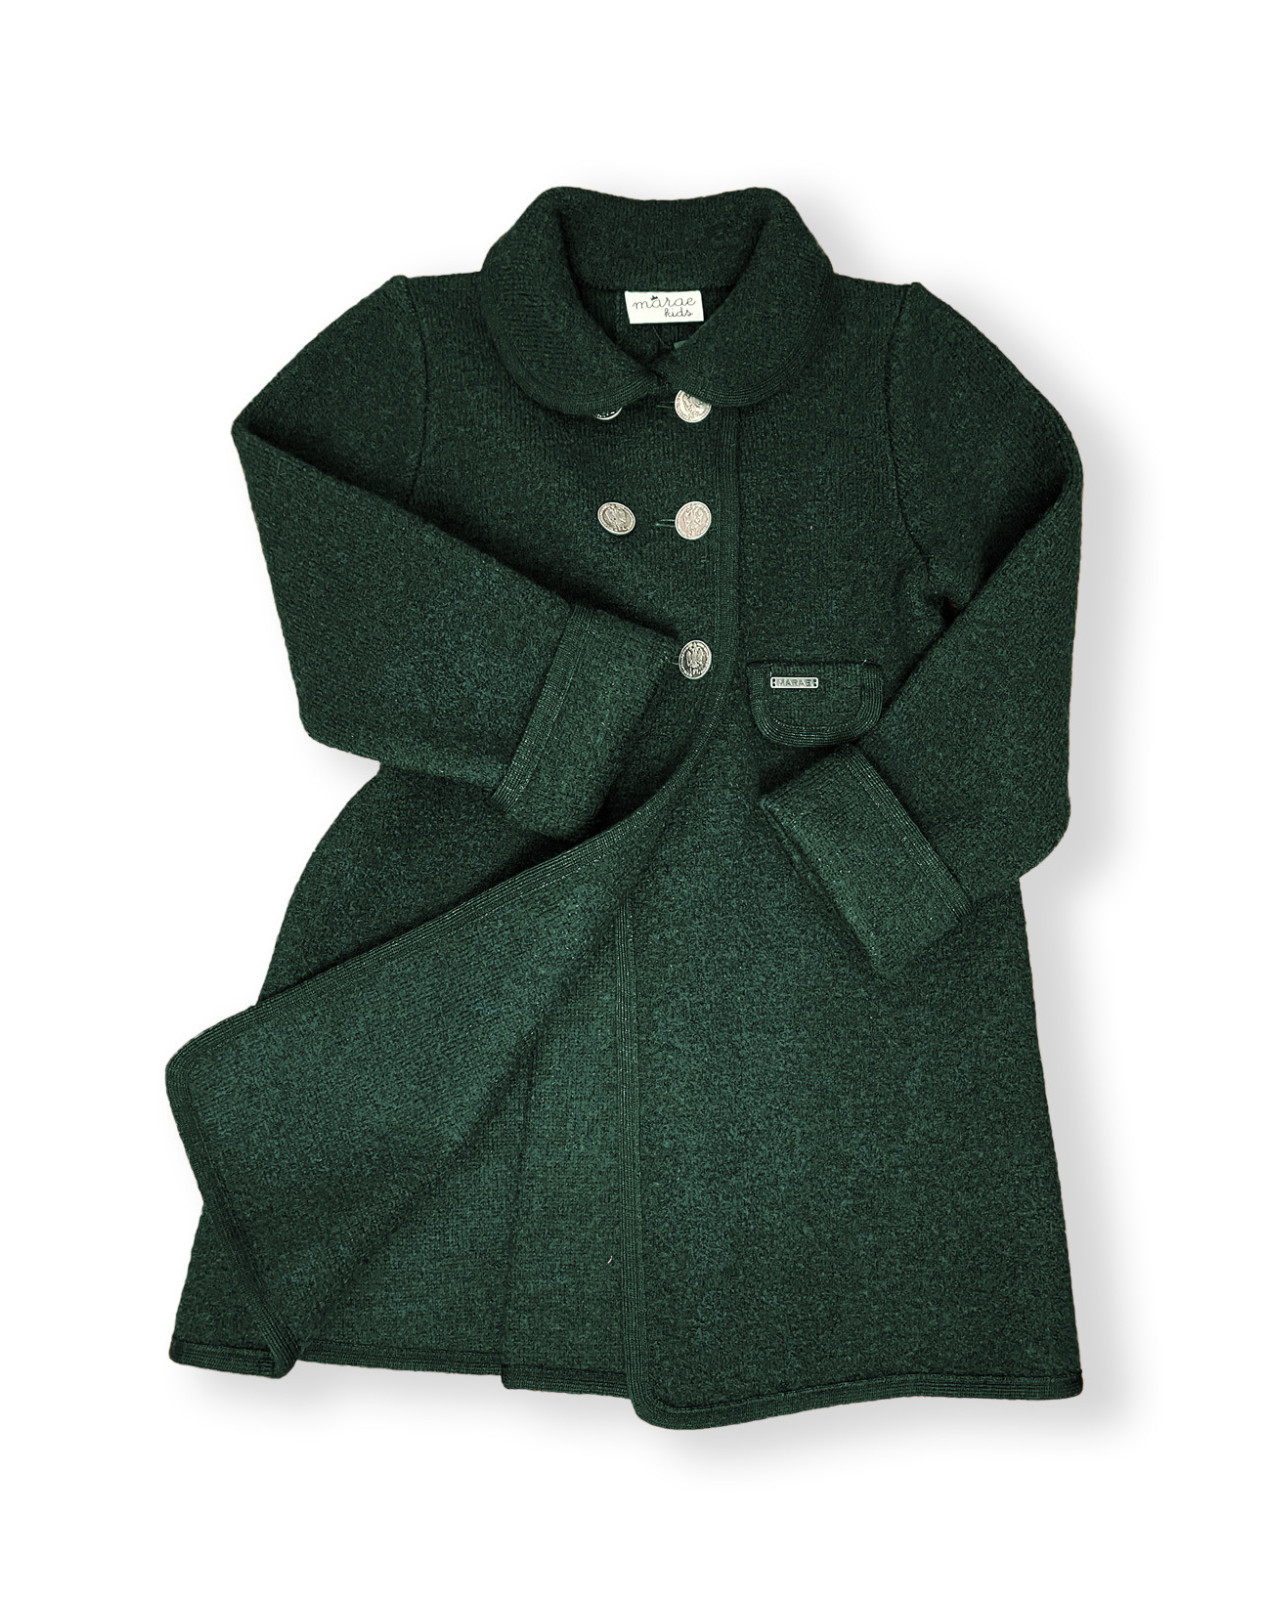 cappotto invernale per bambini, caldo ed elegante. Pura lana di prima  qualità.